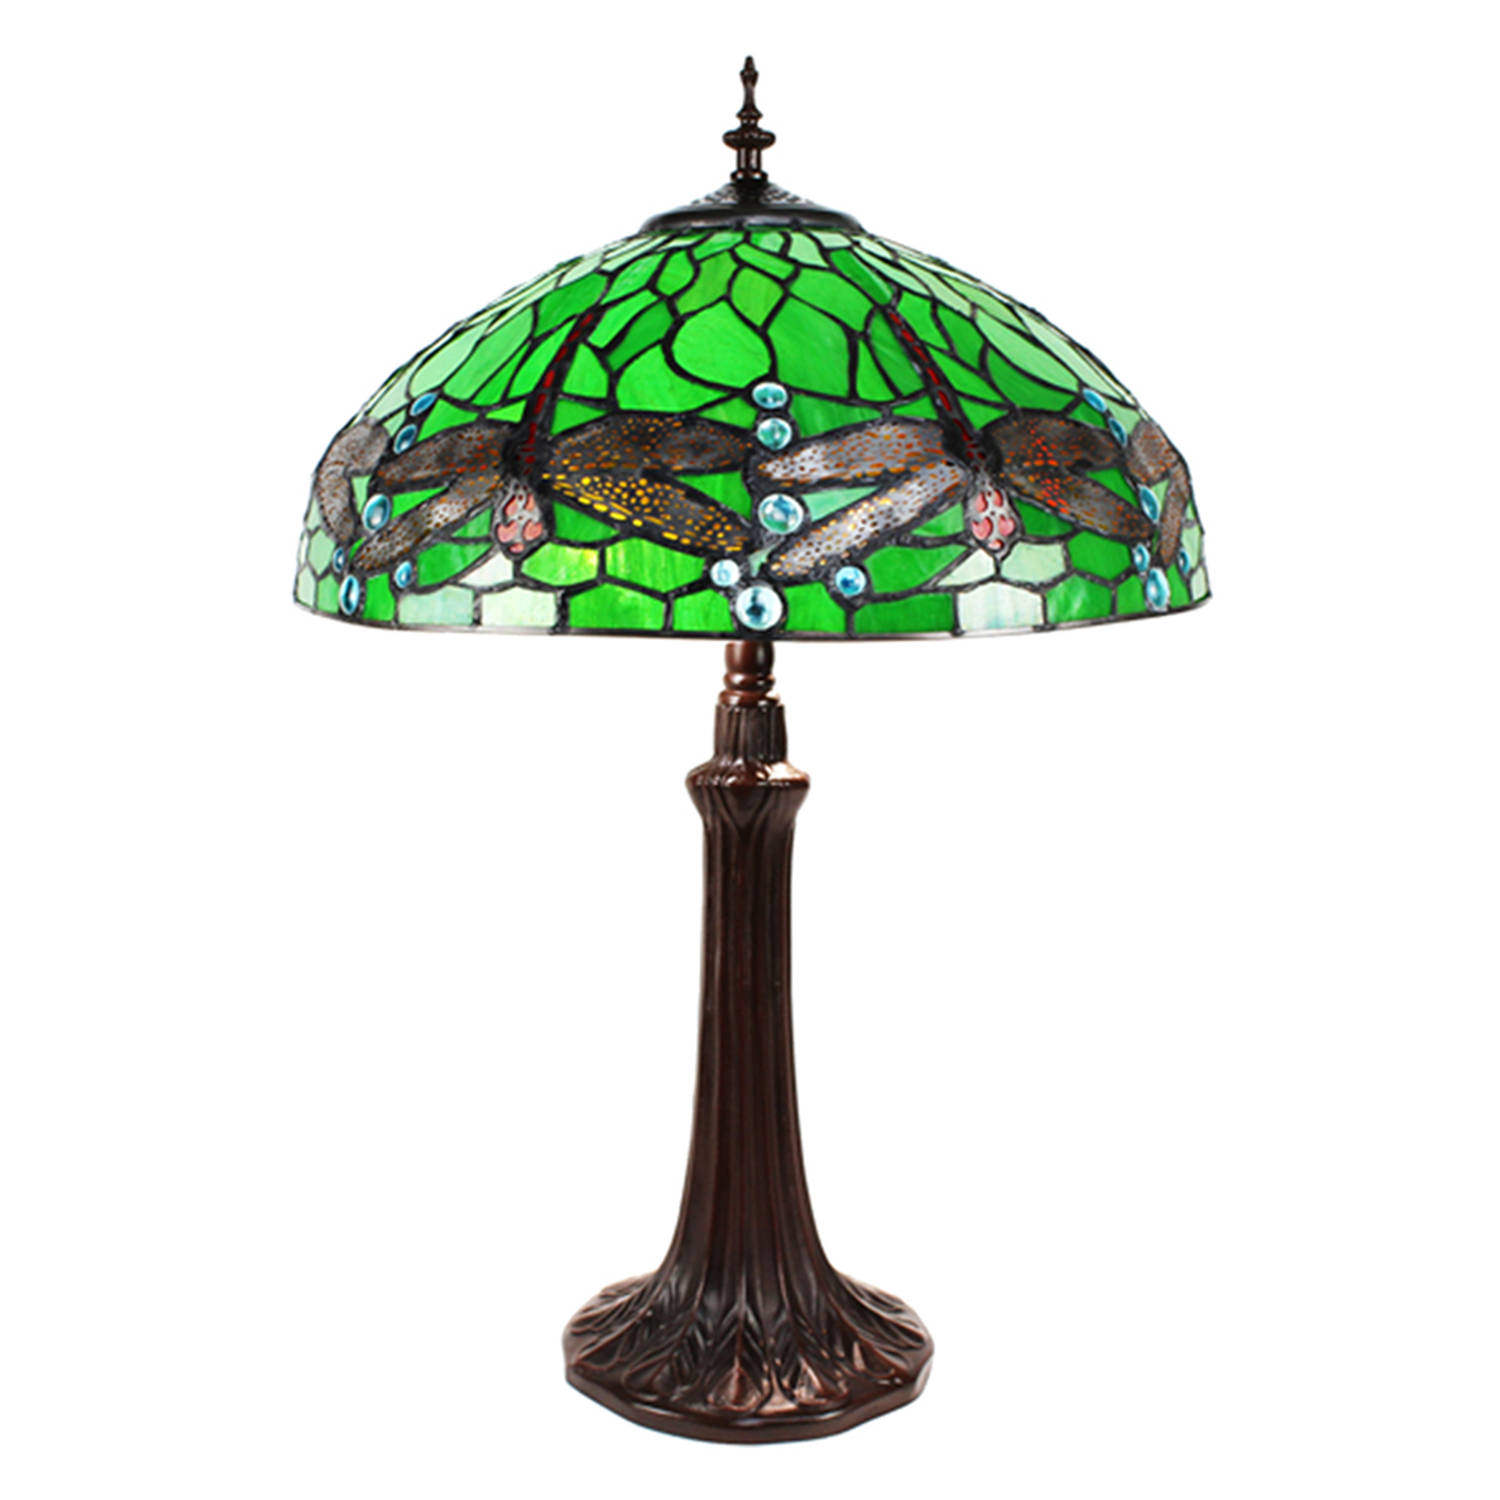 Lumilamp Tiffany Tafellamp Ø 41x59 Cm Groen Geel Metaal Glas Libelle Tiffany Bureaulamp Tiffany Lampen Glas In Lood